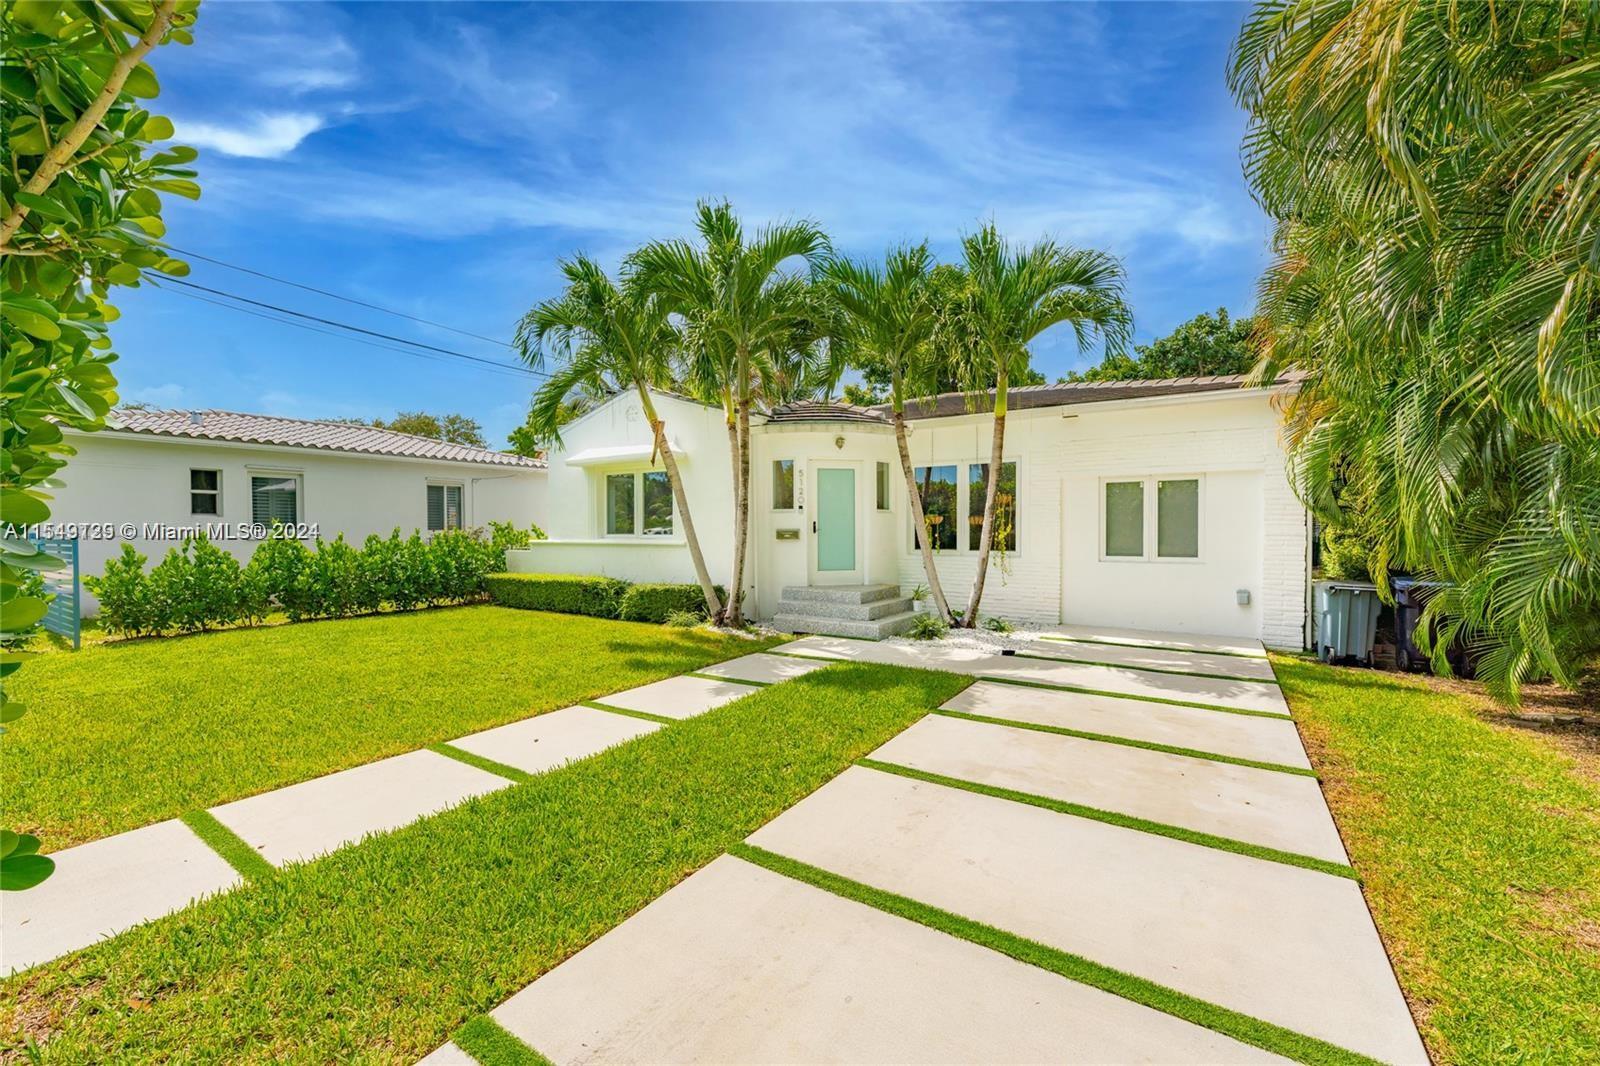 Rental Property at 5120 Cherokee Ave, Miami Beach, Miami-Dade County, Florida - Bedrooms: 3 
Bathrooms: 3  - $8,950 MO.